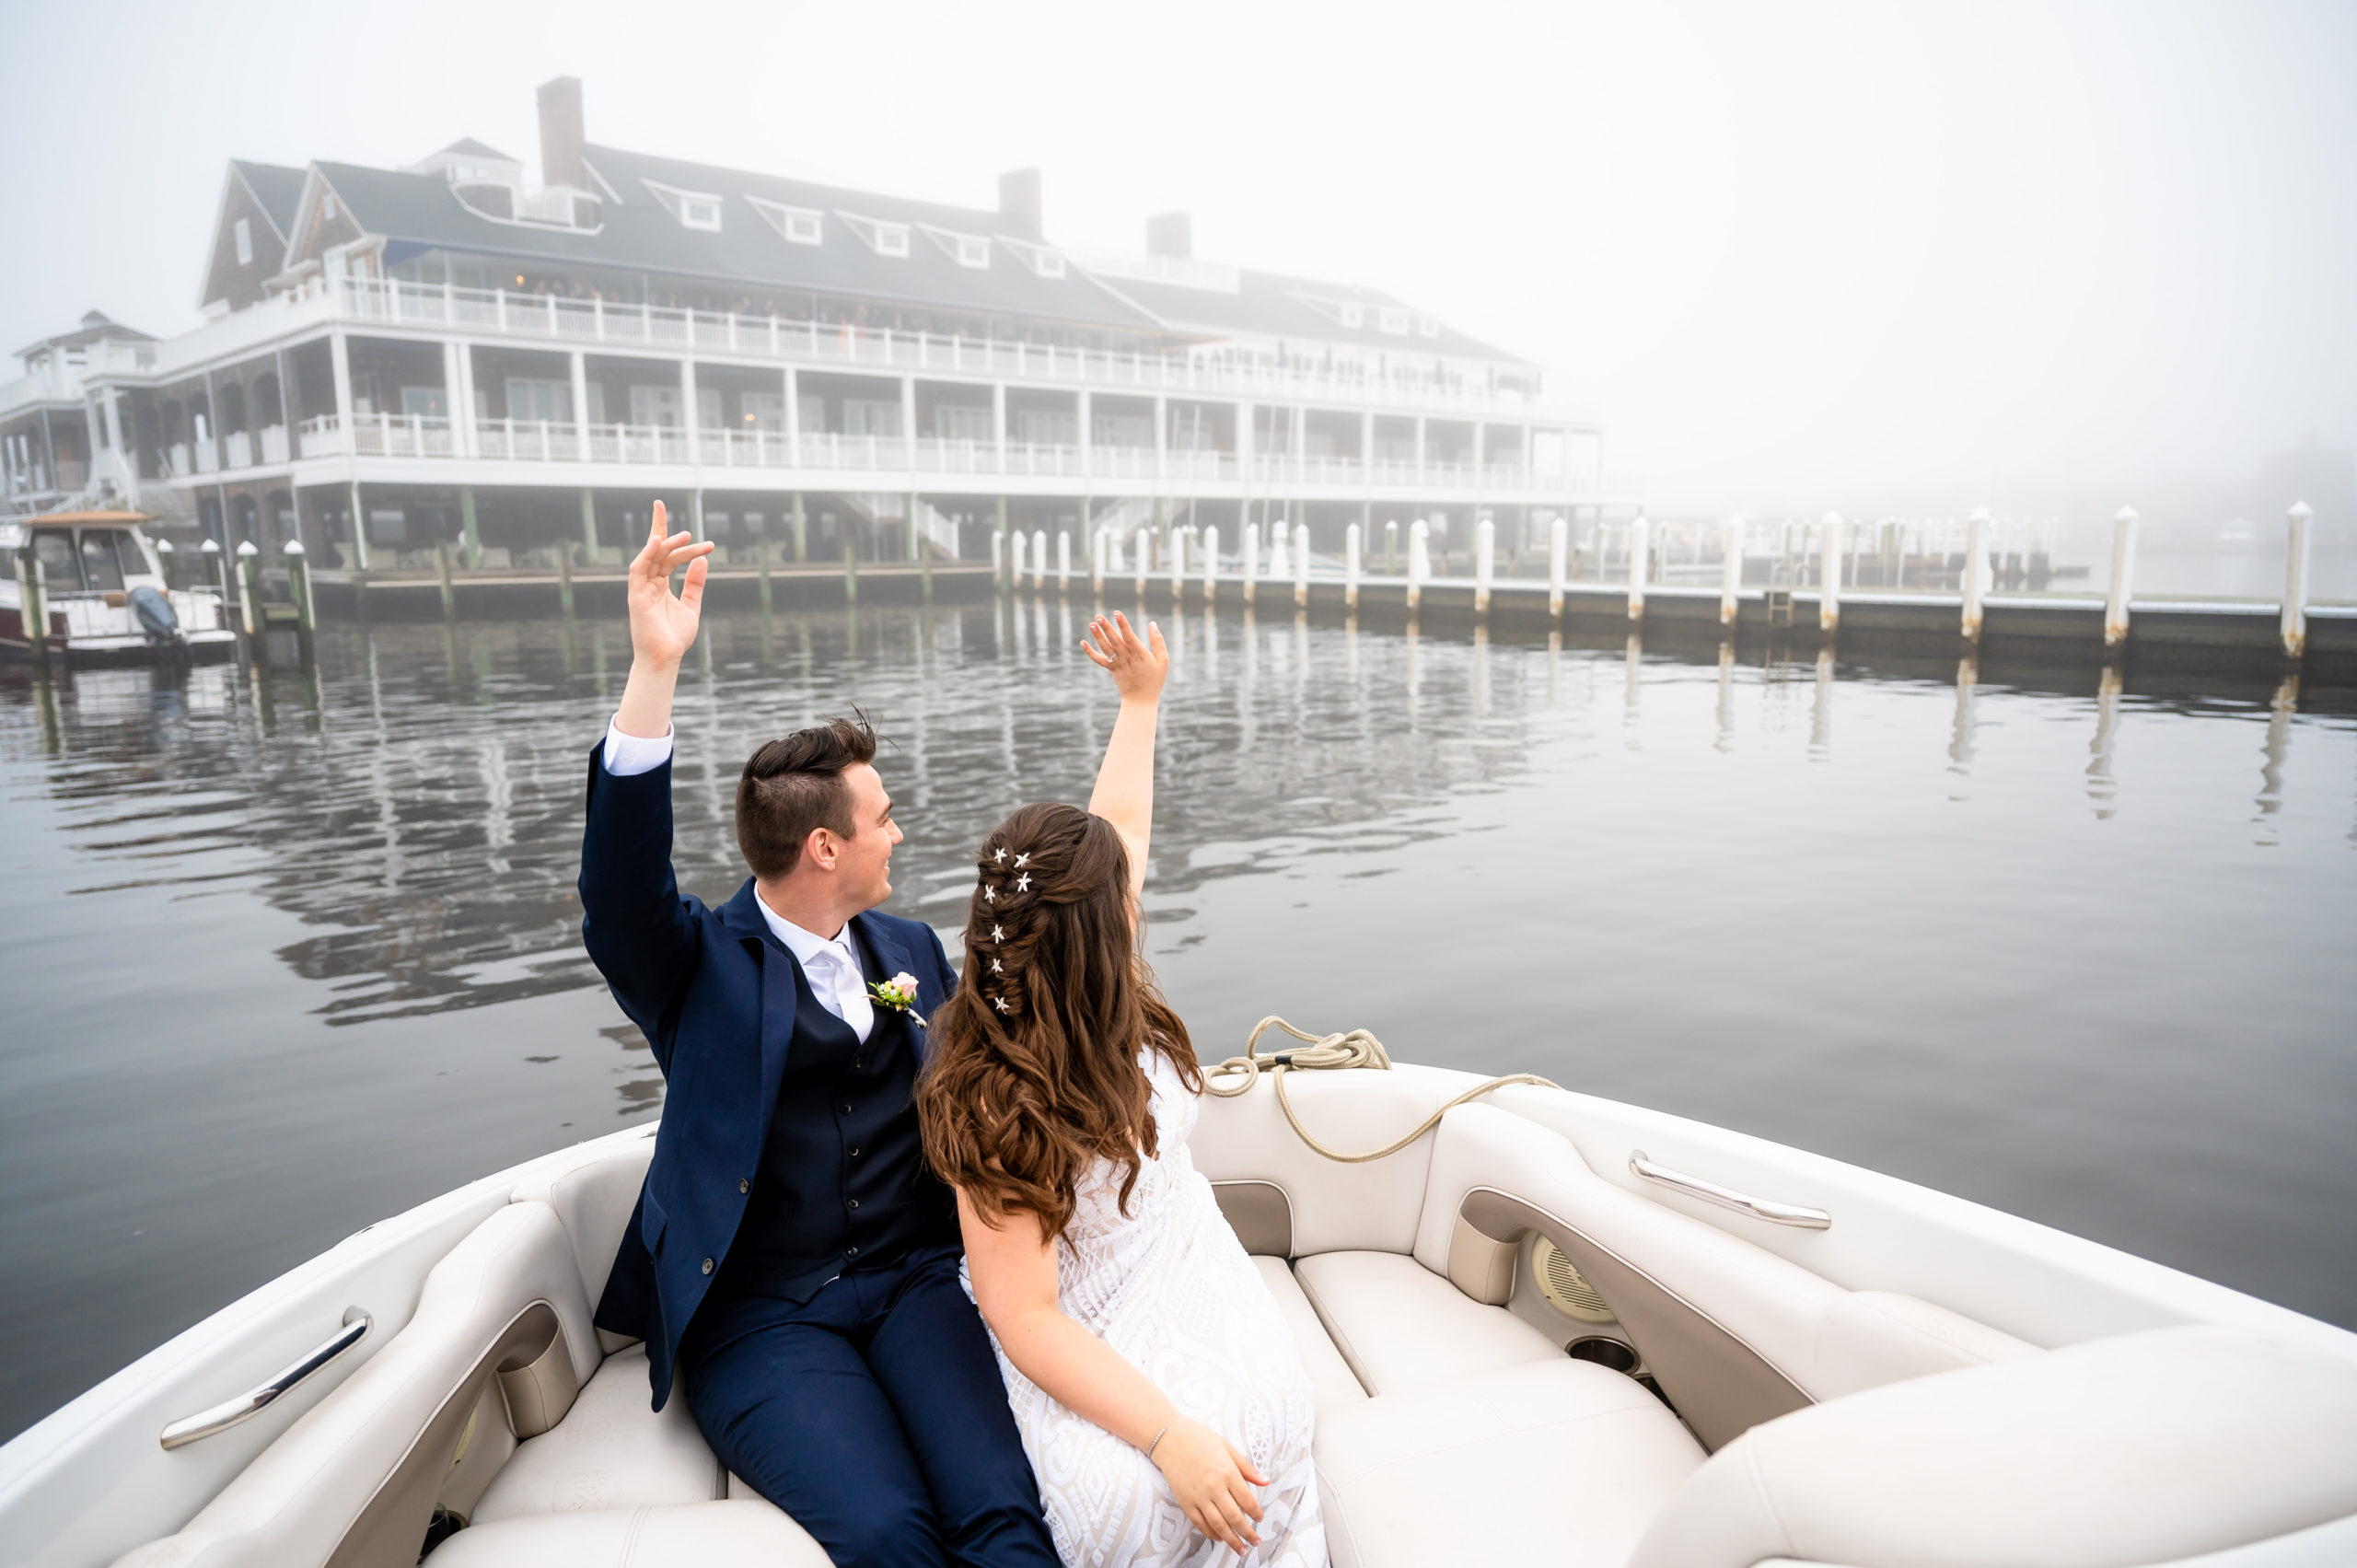 Bay Head Yacht Club wedding photo from a boat in the fog